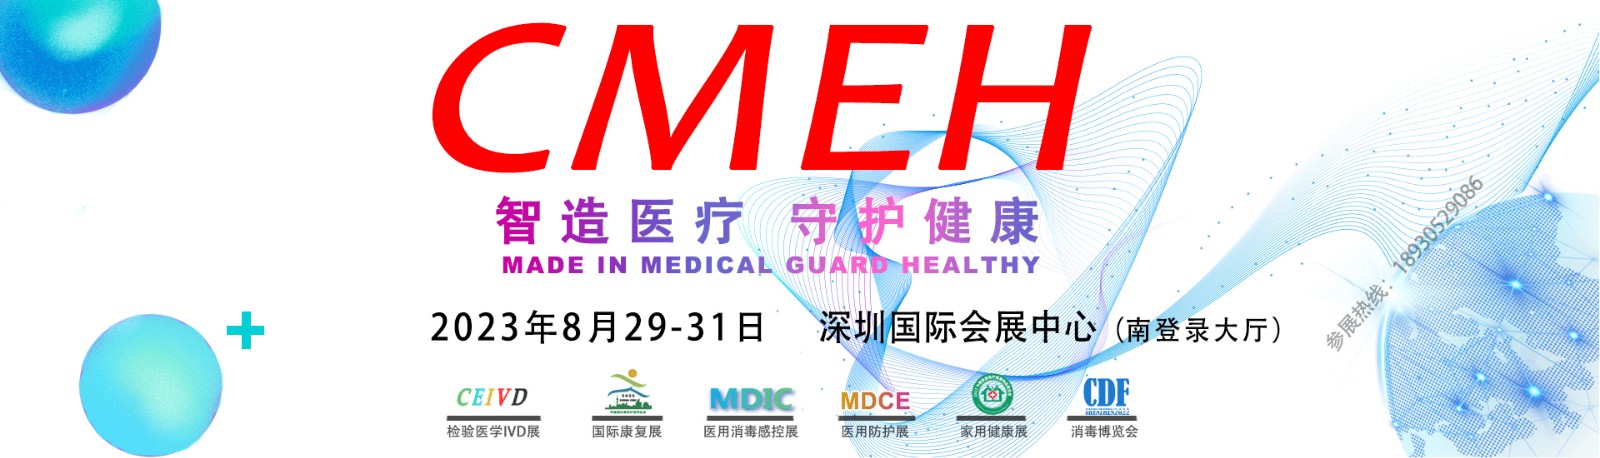 深圳扶持企业扩大救治类医疗器械和药品生产能力